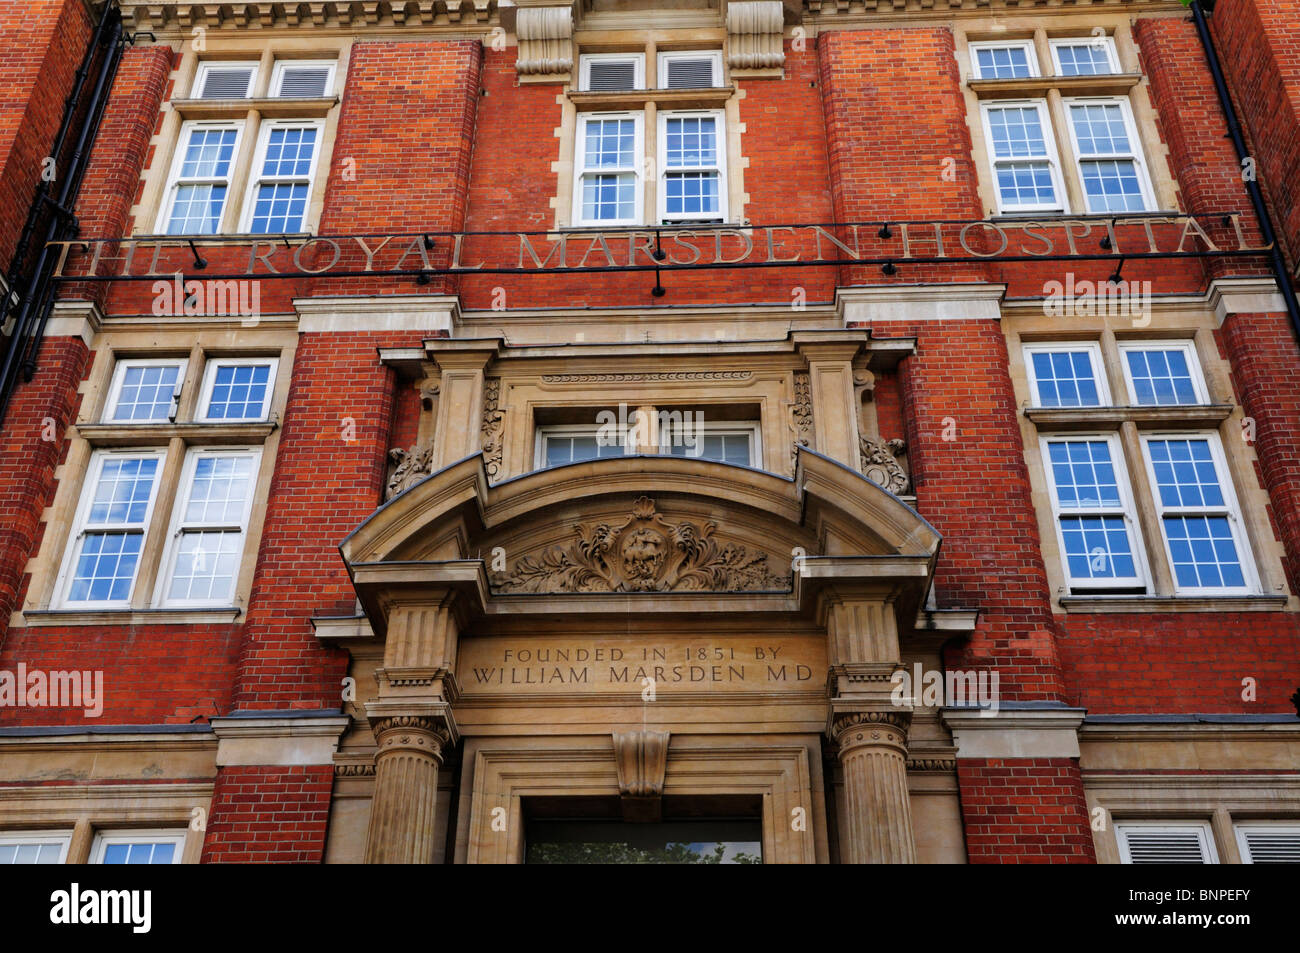 La façade de l'Hôpital Royal Marsden, Fulham Road, London, England, UK Banque D'Images